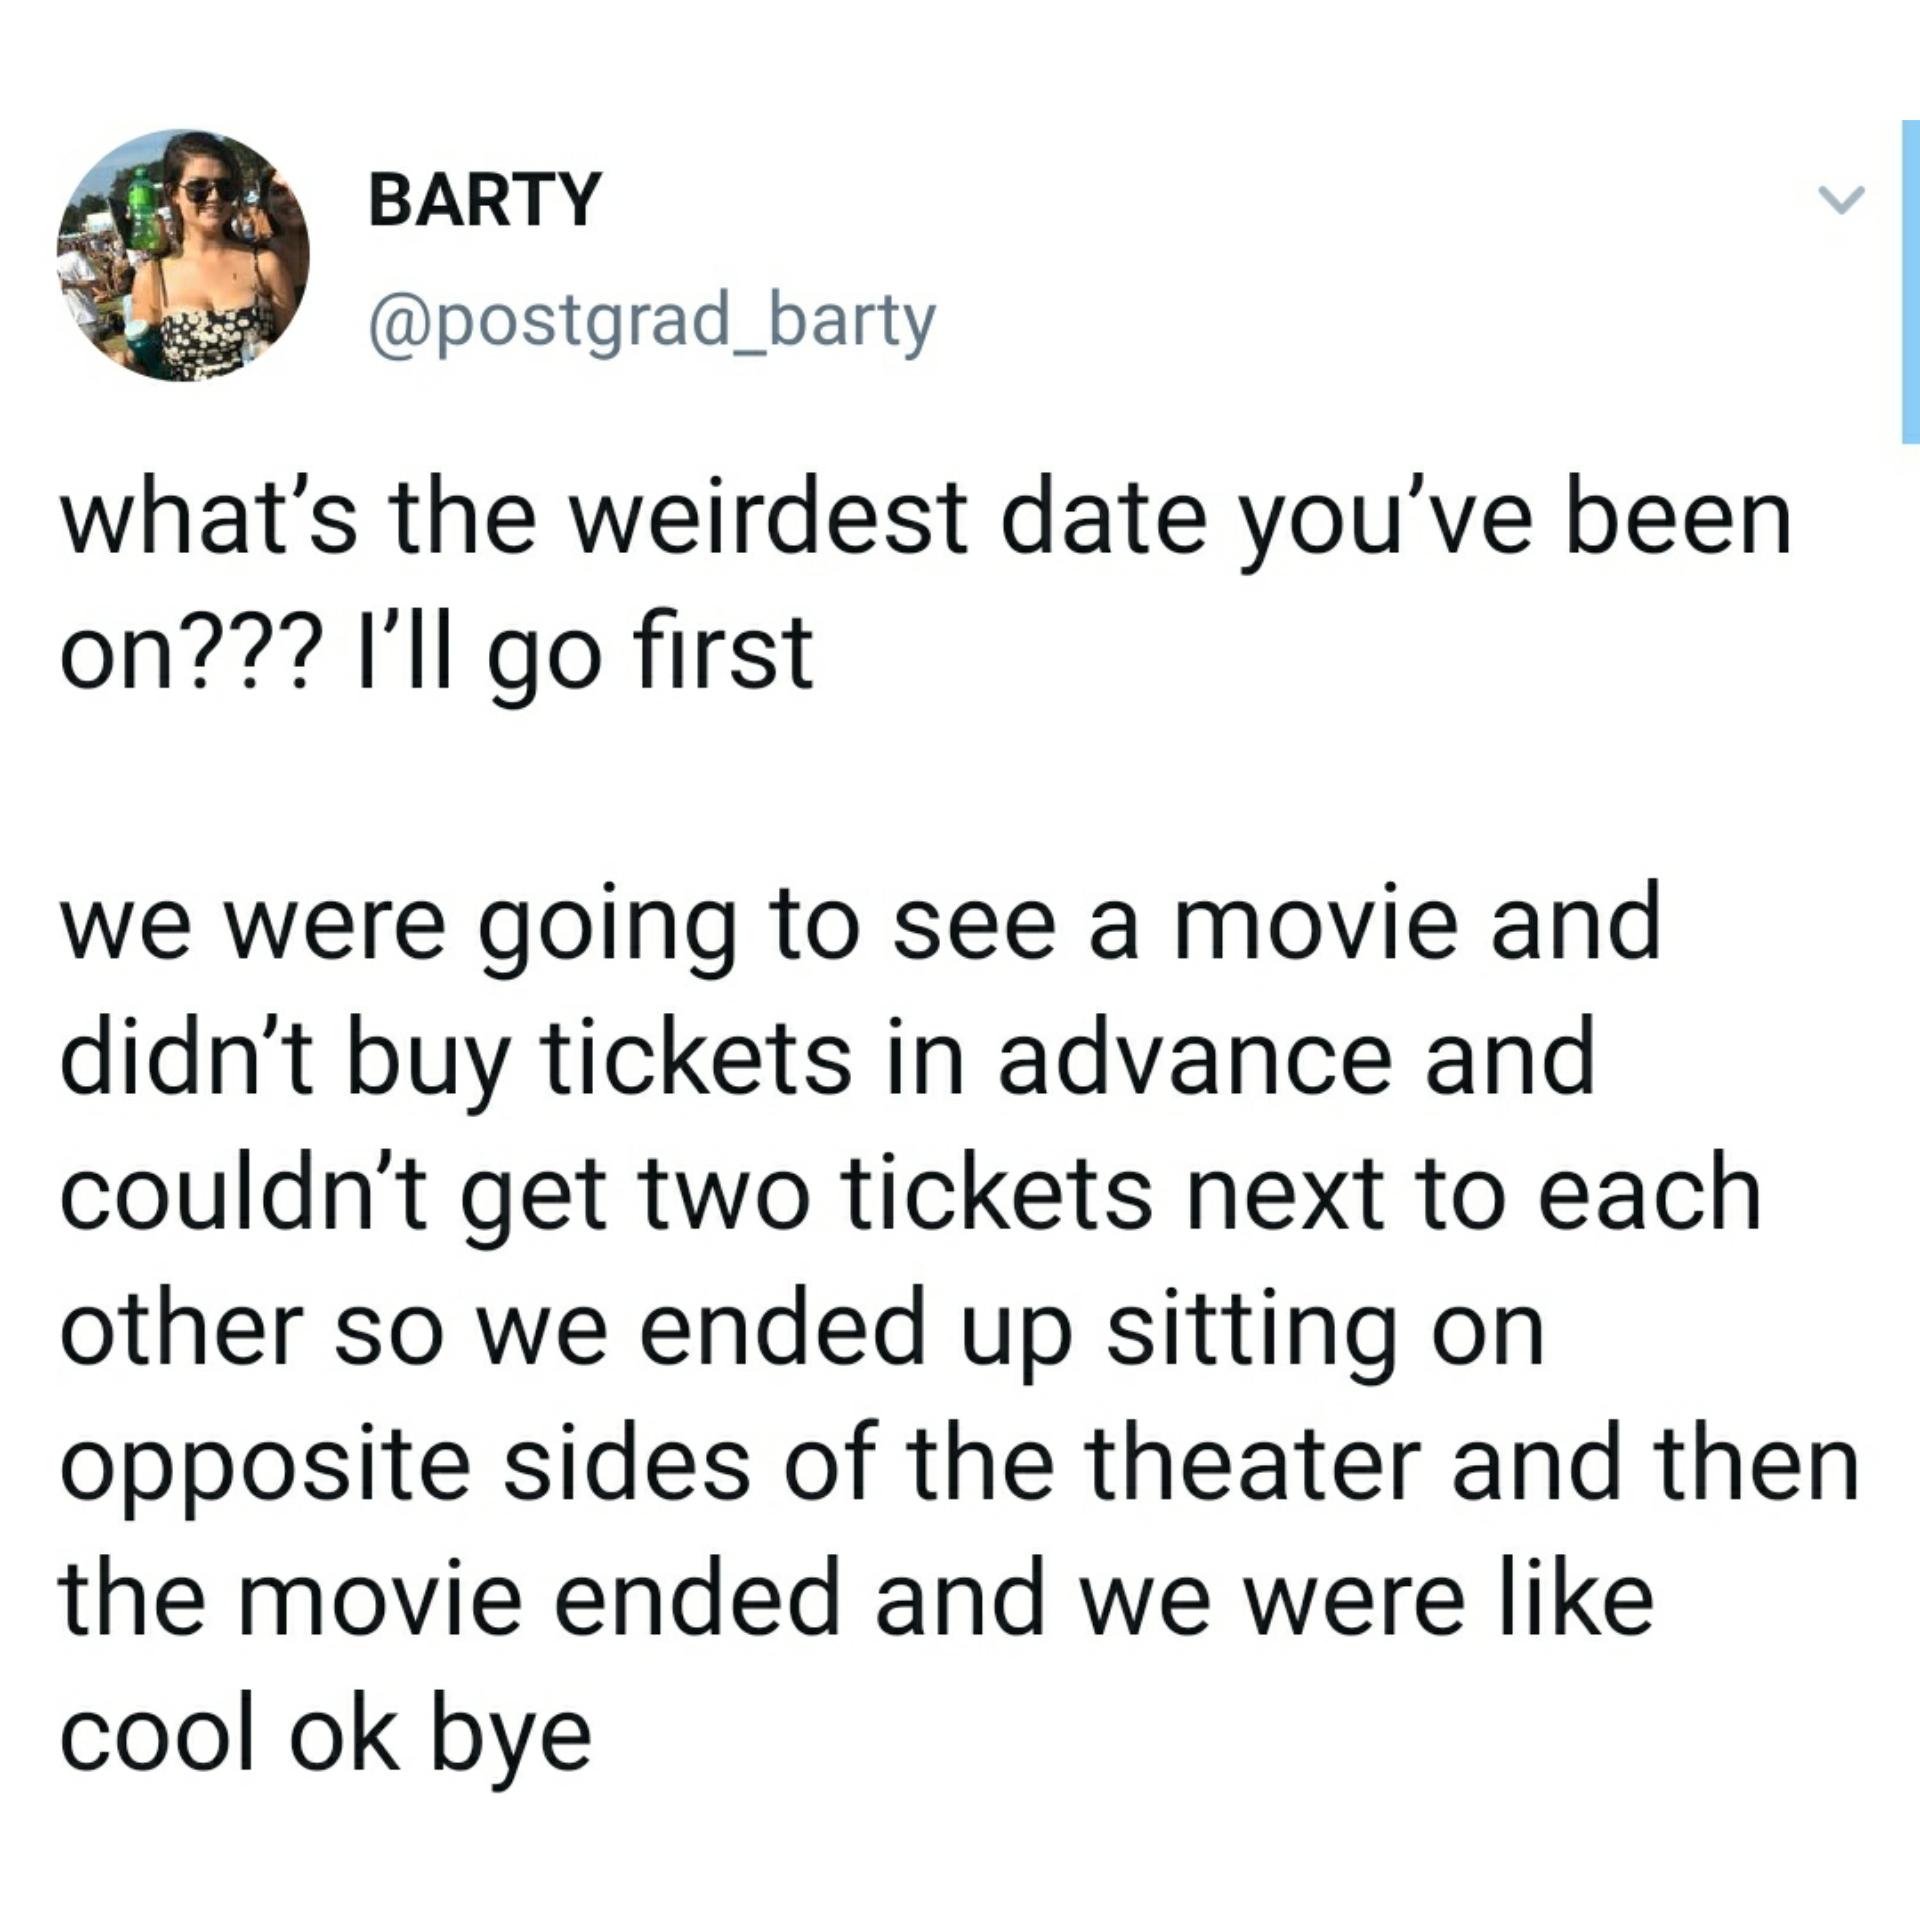 Weirdest+date+ever%3F